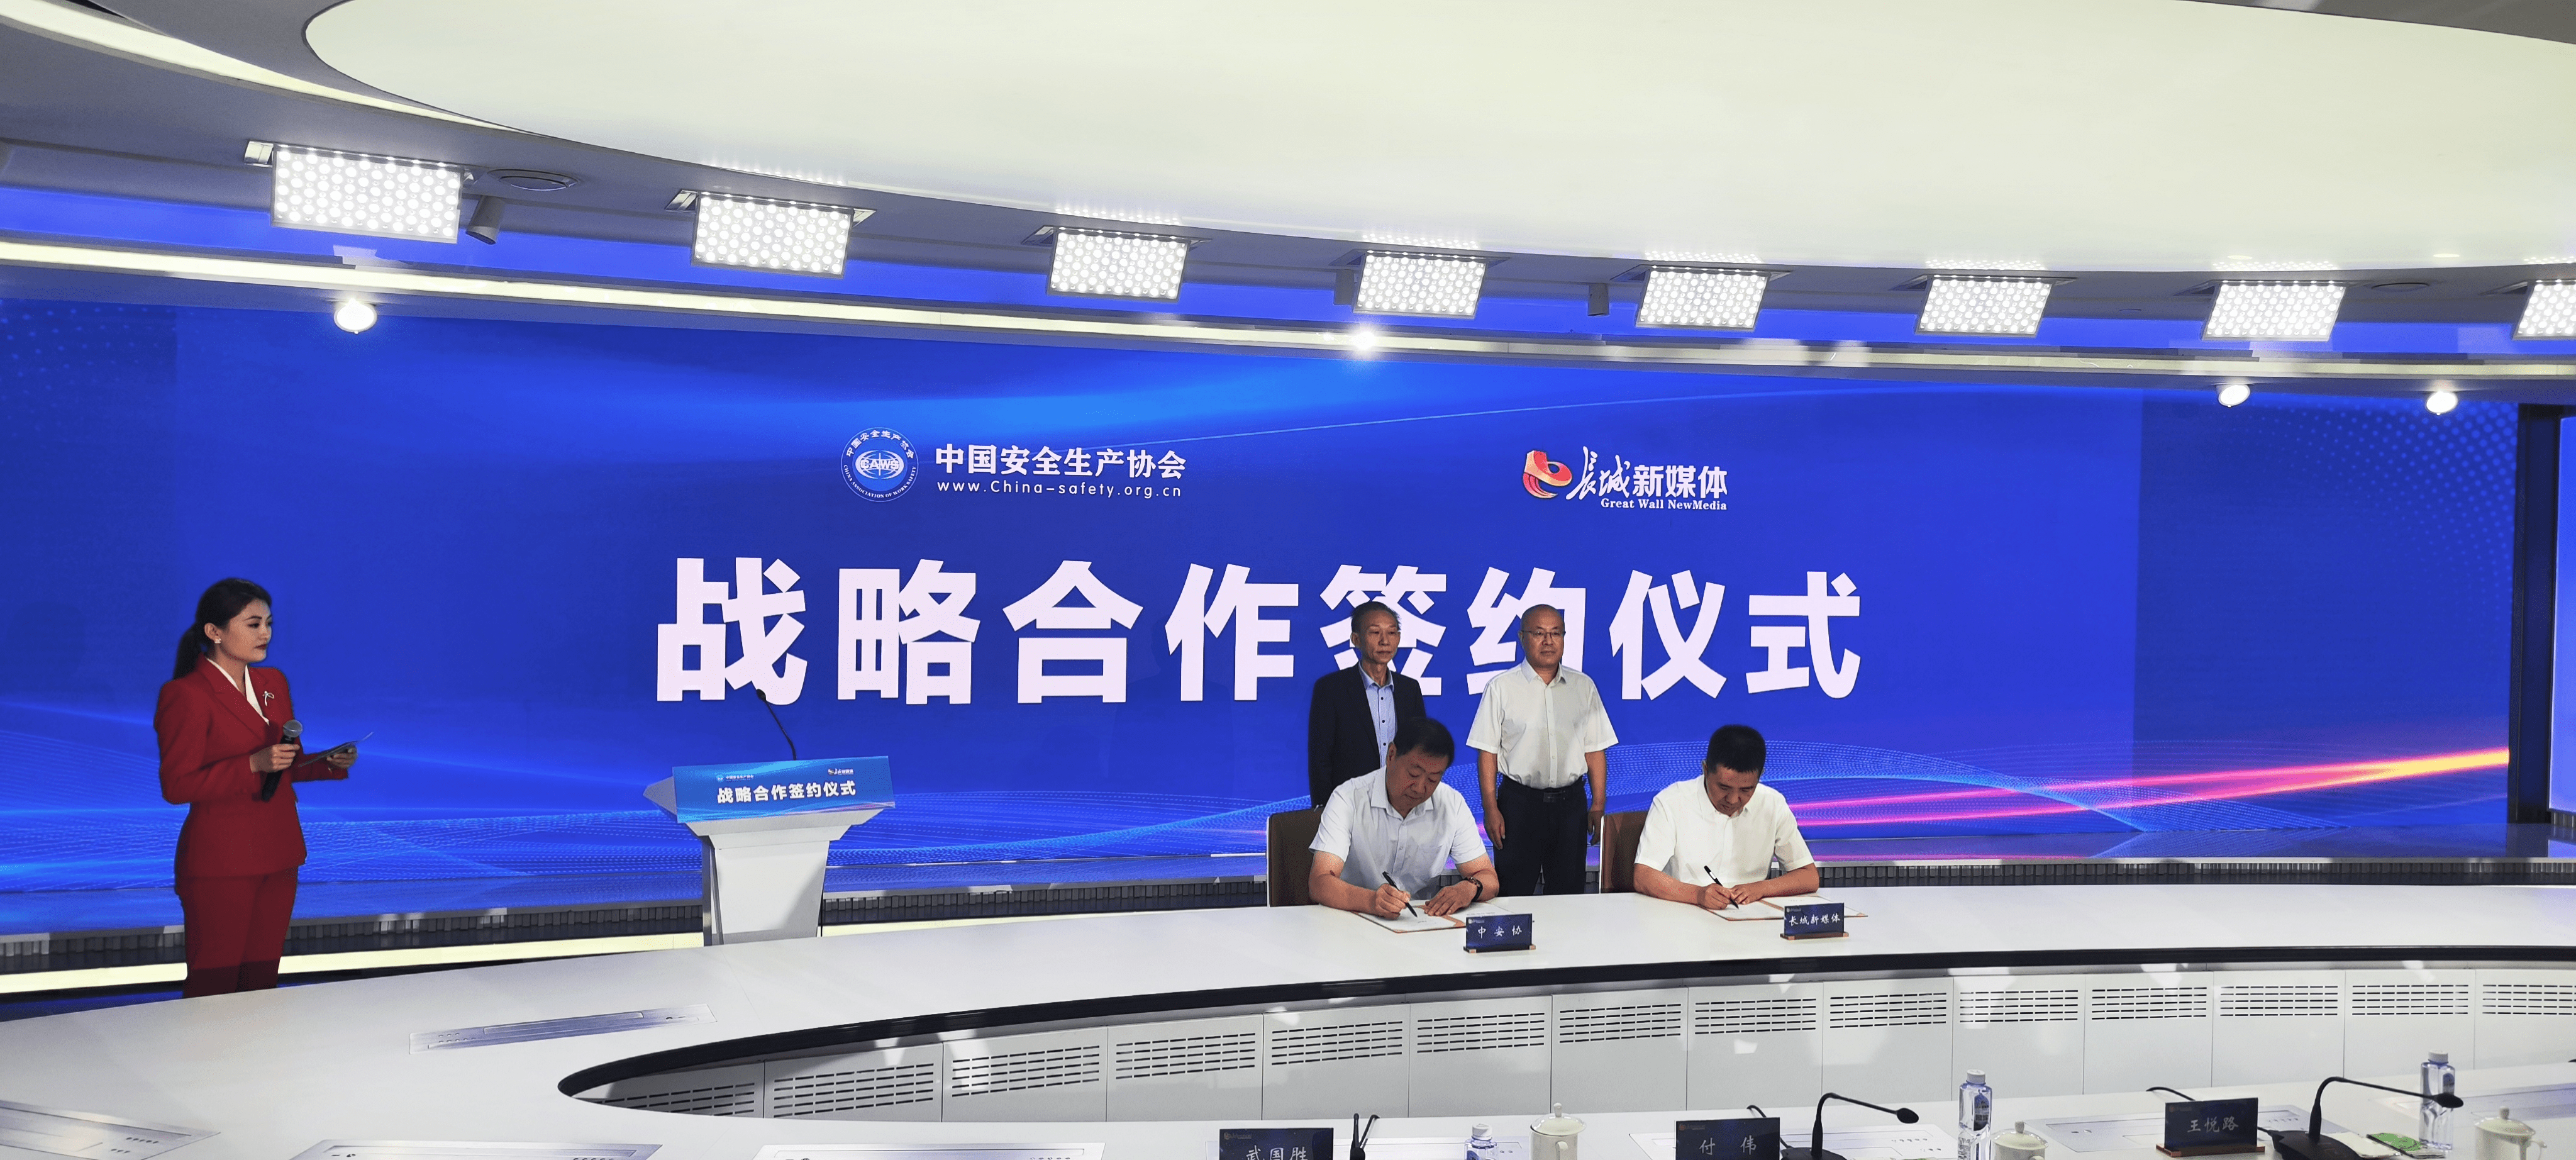 中国安全生产协会与长城新媒体集团签署战略合作协议